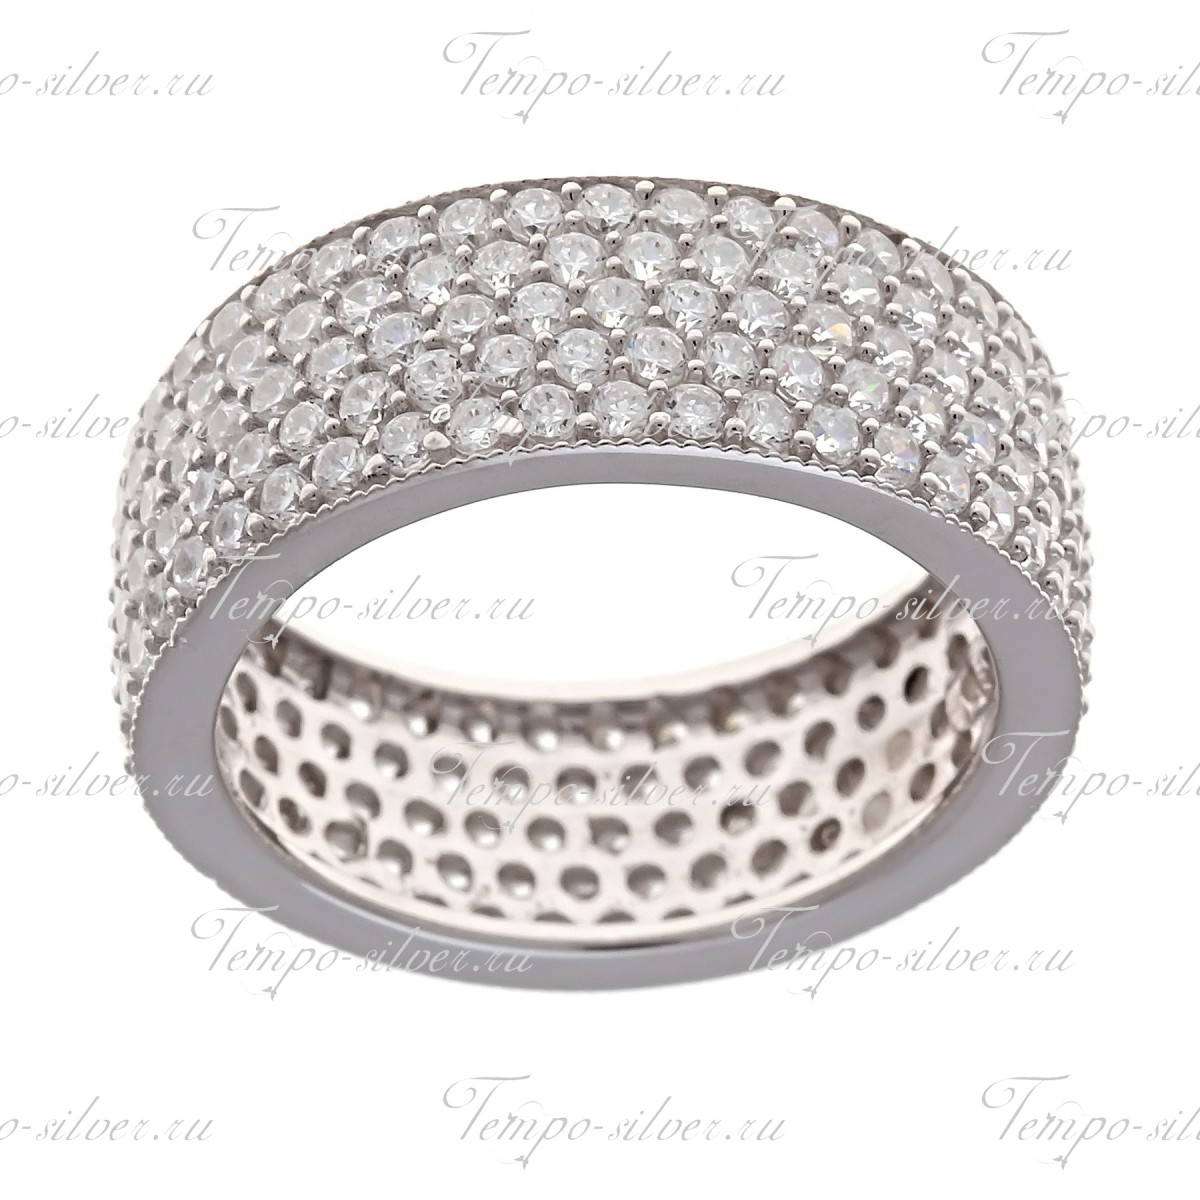 Кольцо из серебра обручальной формы, украшенное пятью рядами белых камней цена